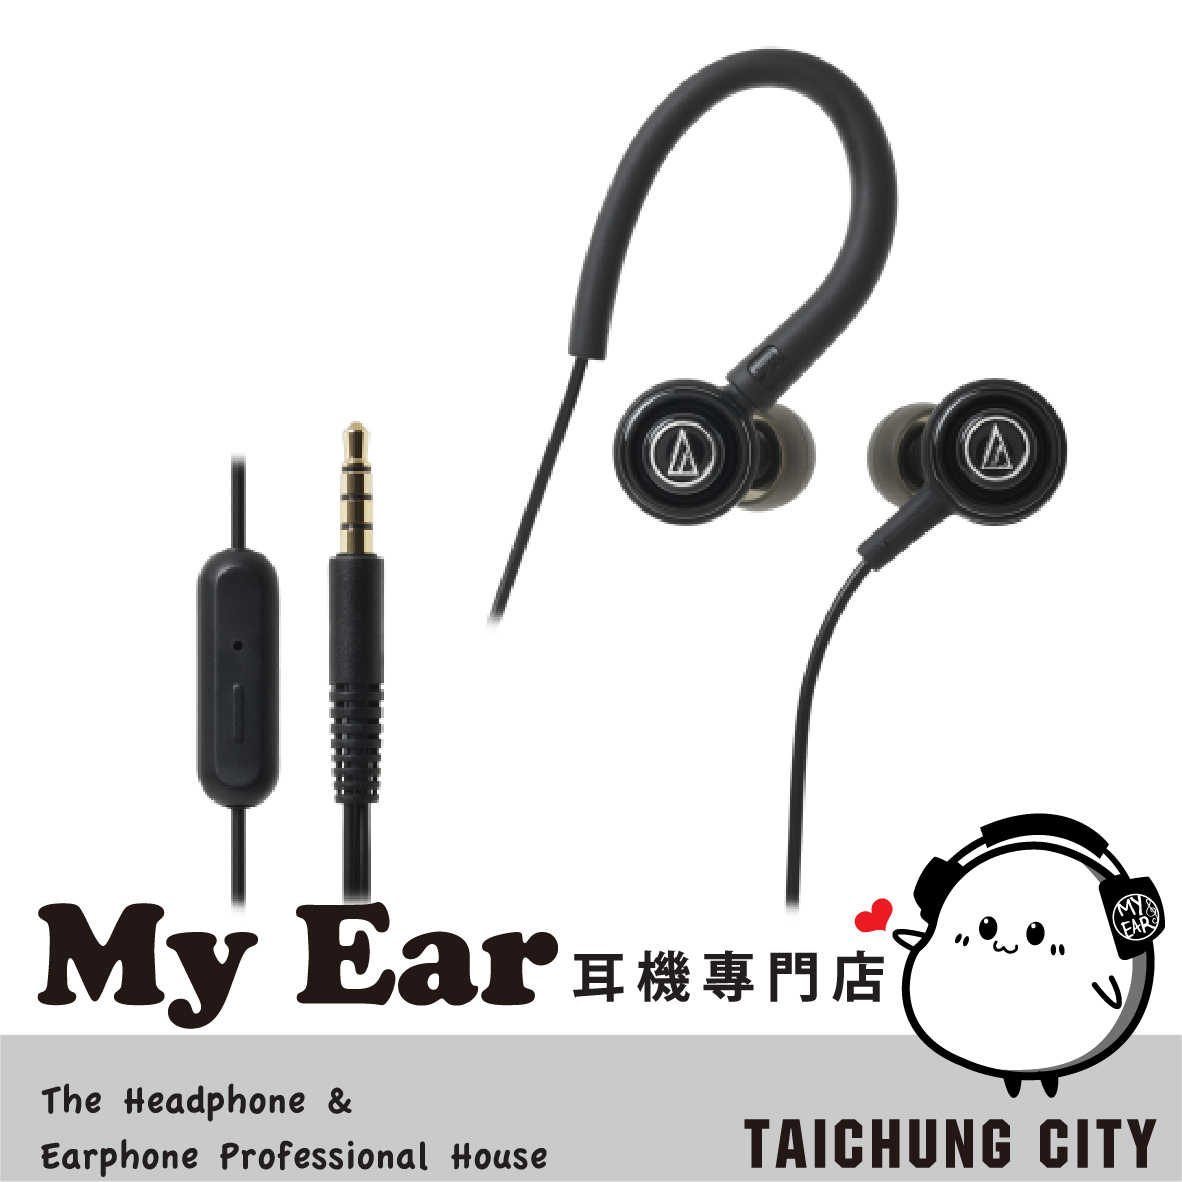 鐵三角 ATH-COR150iS 綠 可通話 線控 耳道式耳機 Android iOS 適用 | My Ear耳機專門店